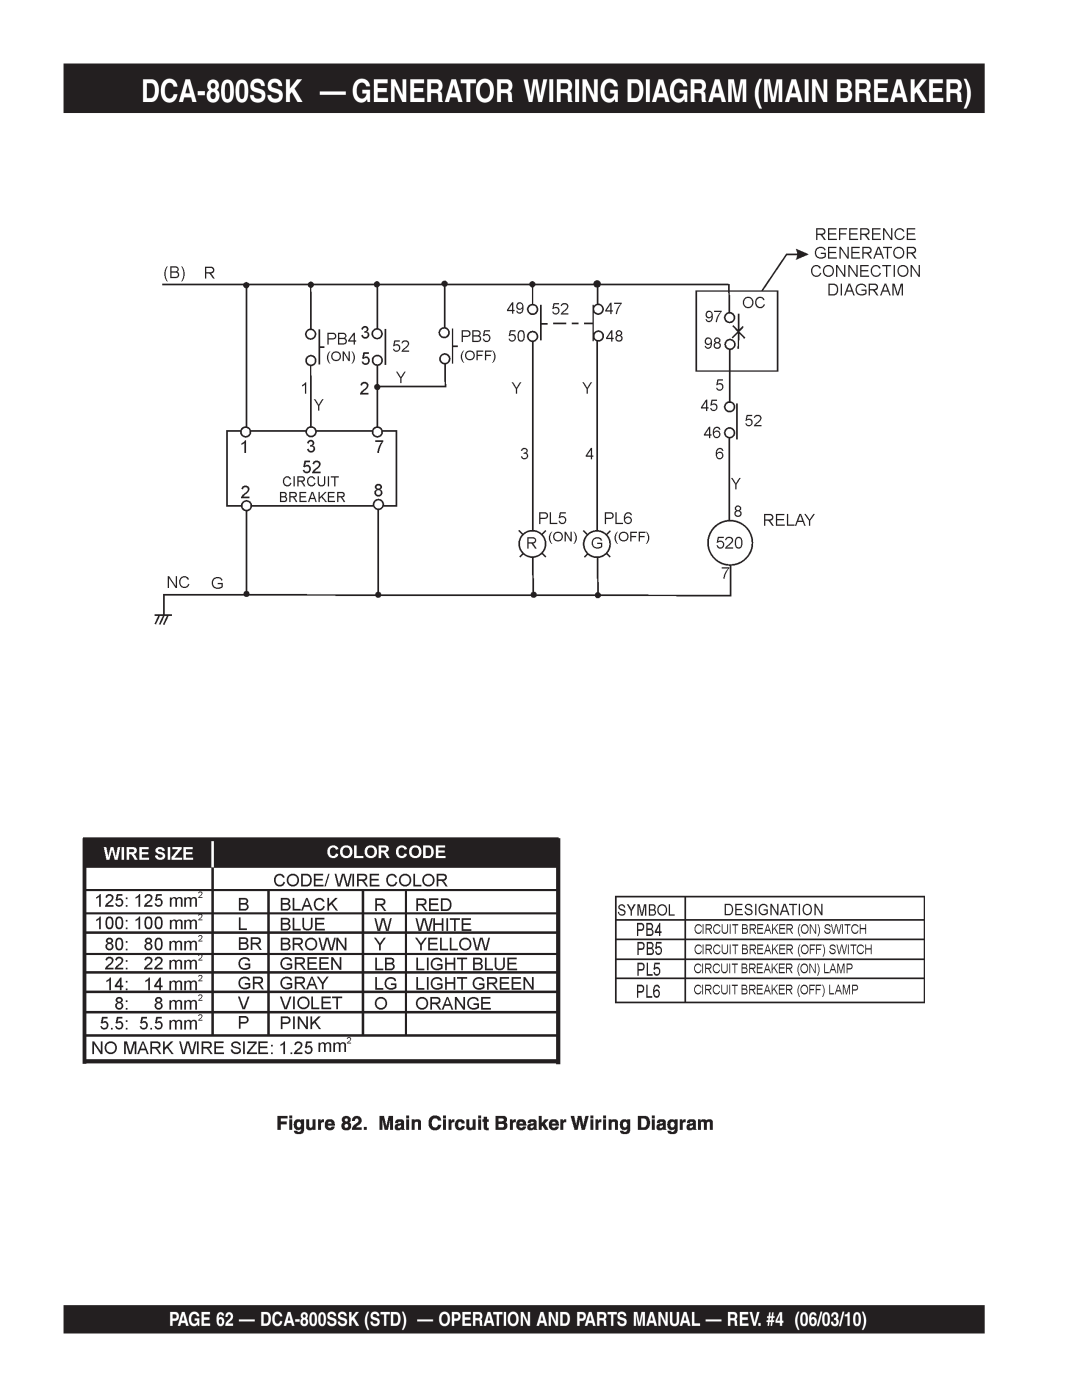 Multiquip operation manual DCA-800SSK - GENERATOR WIRING DIAGRAM MAIN BREAKER, Main Circuit Breaker Wiring Diagram 